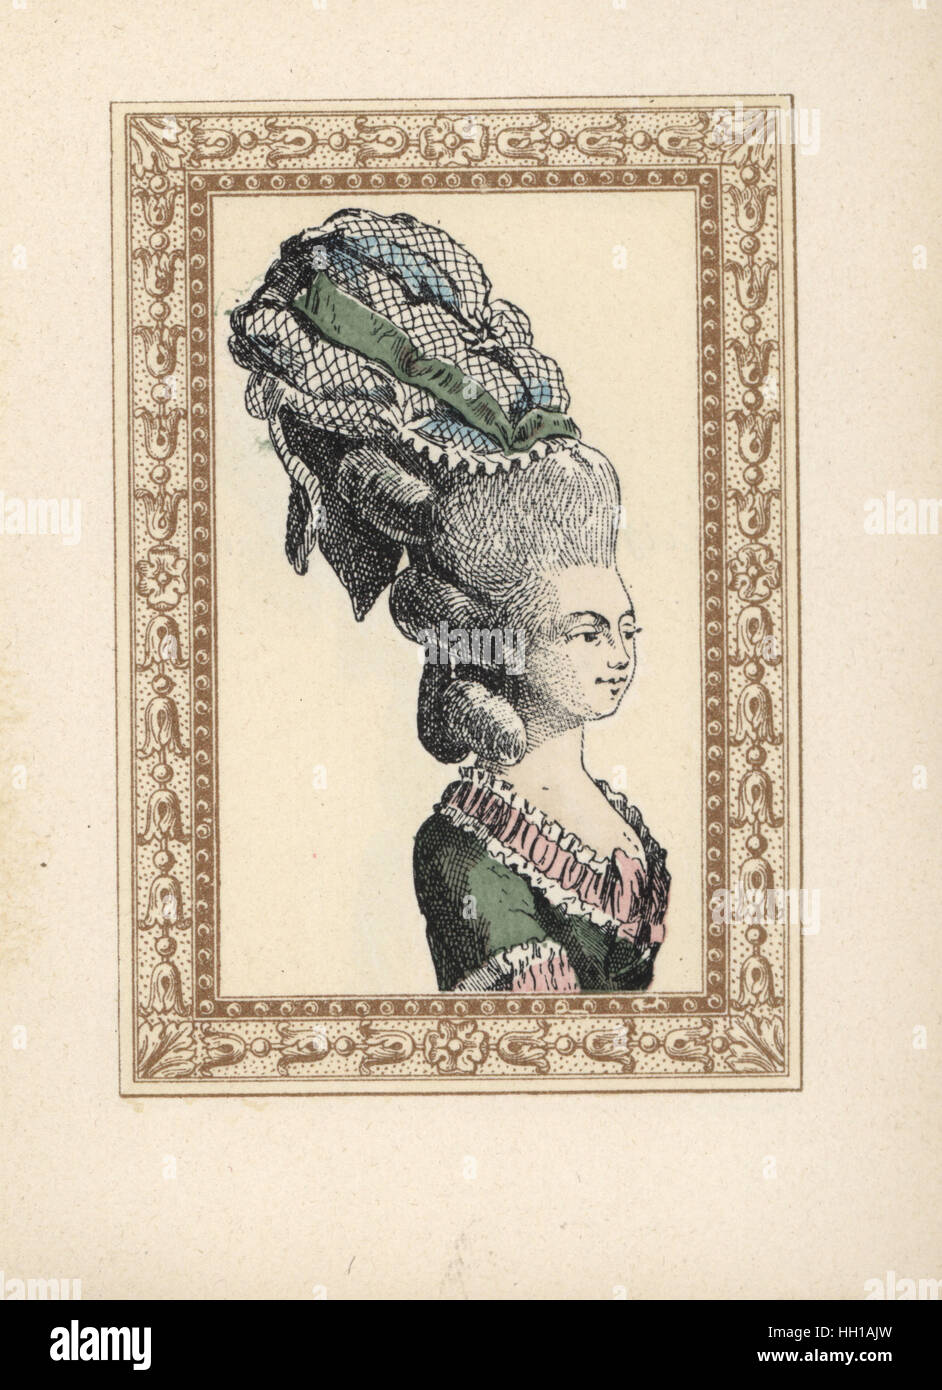 Femme de la Bastienne bonnet, inspiré par l'opéra comique de Mozart Bastien  und Bastienne 1768. Lithographie coloriée par de Laubadere de Octave  Uzanne's coiffure élégante ou parures excentriques de l'époque du roi